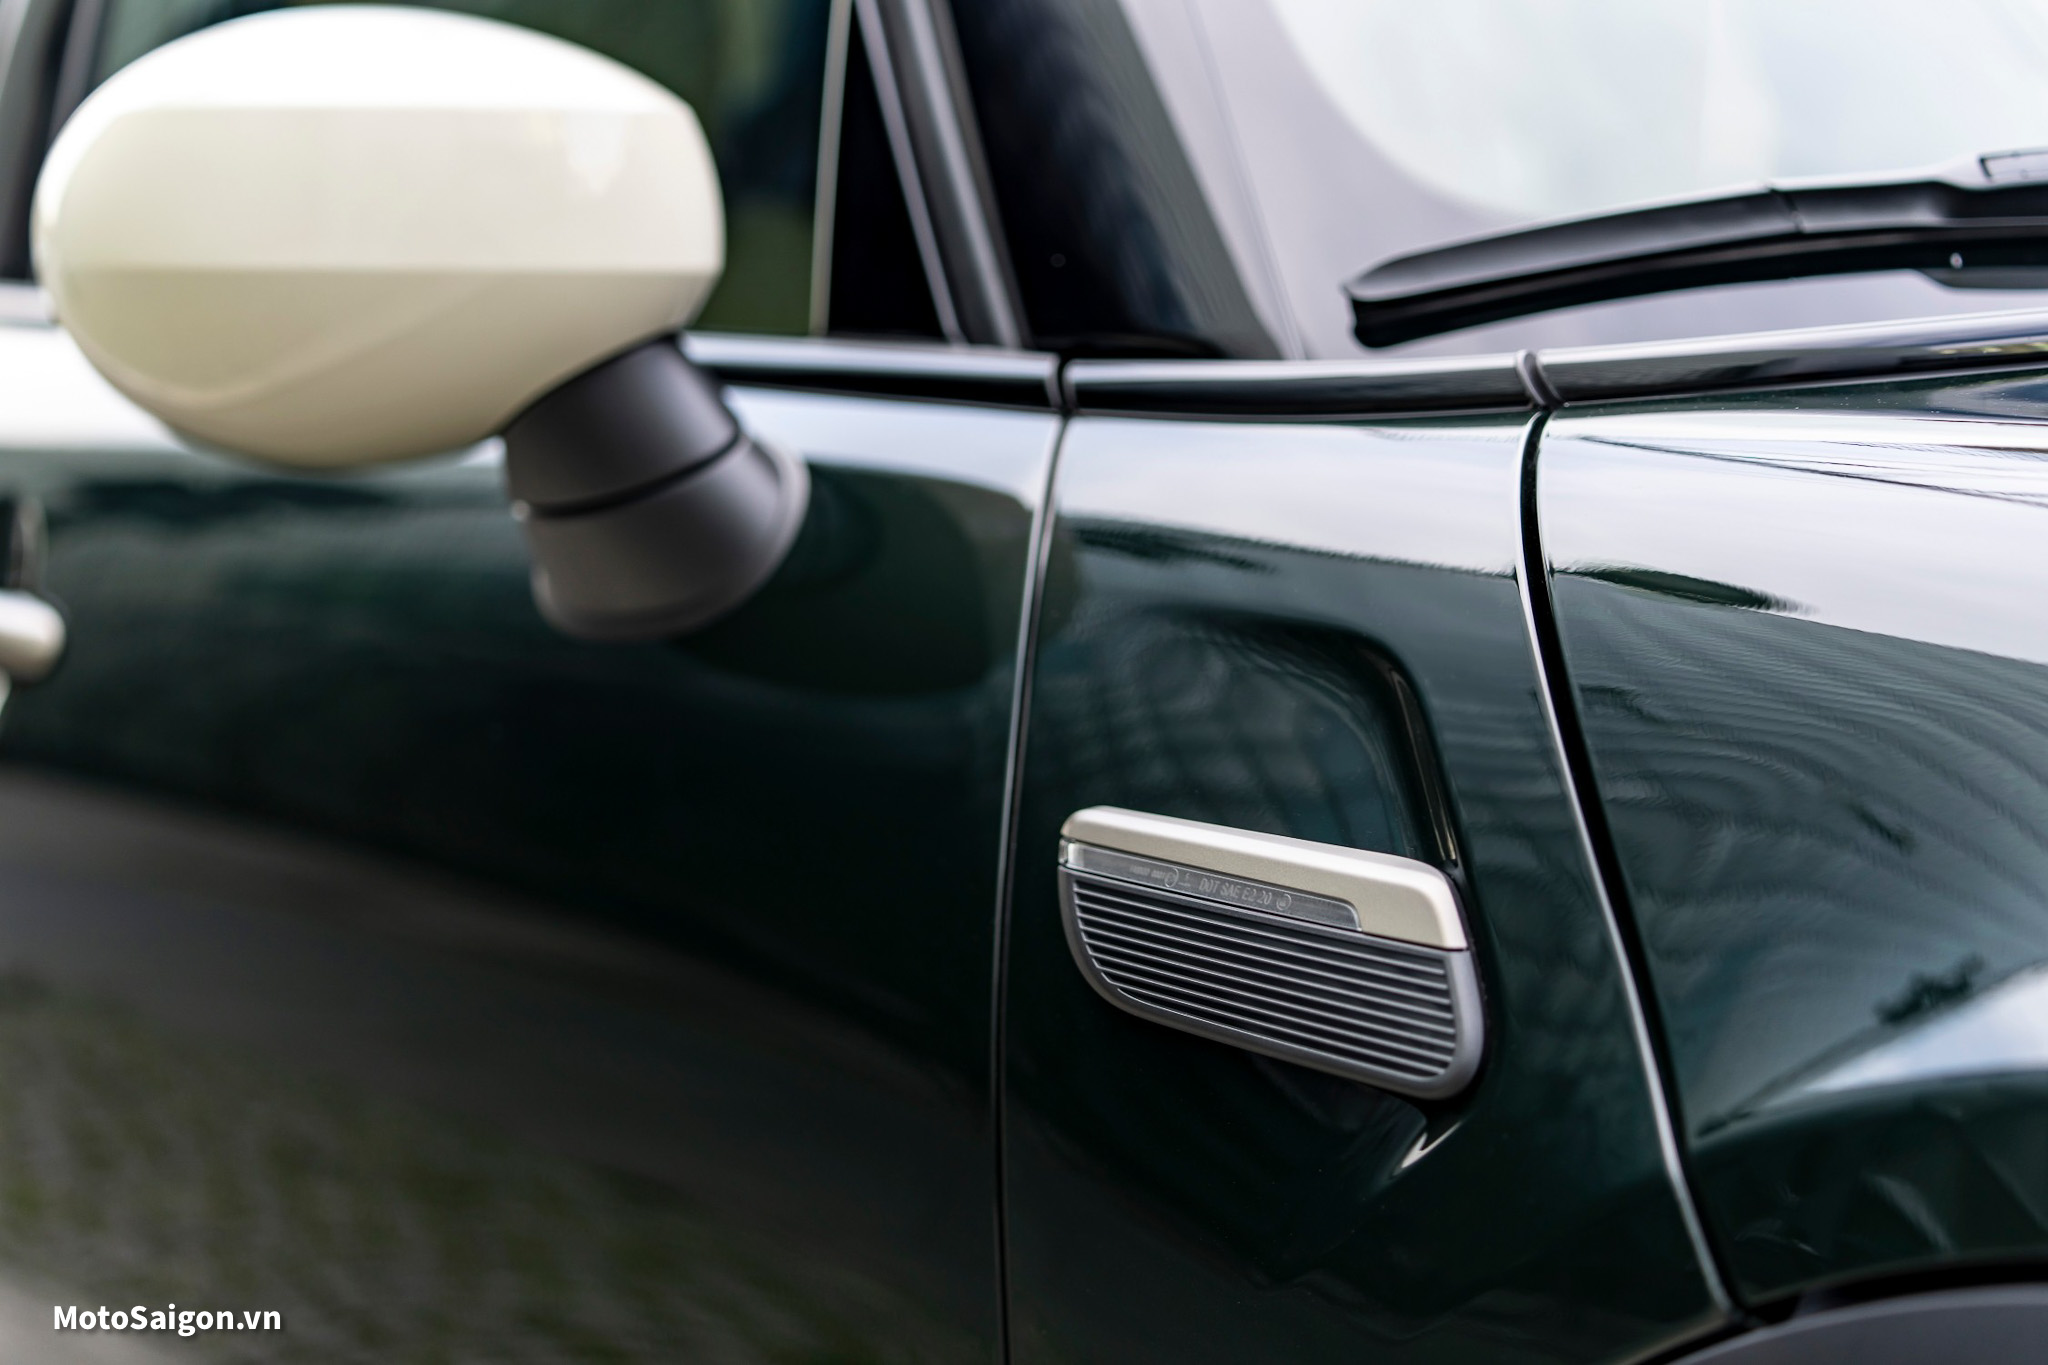 Giá xe MINI Cooper S 5 cửa Resolute Edition mới nhất đã được công bố